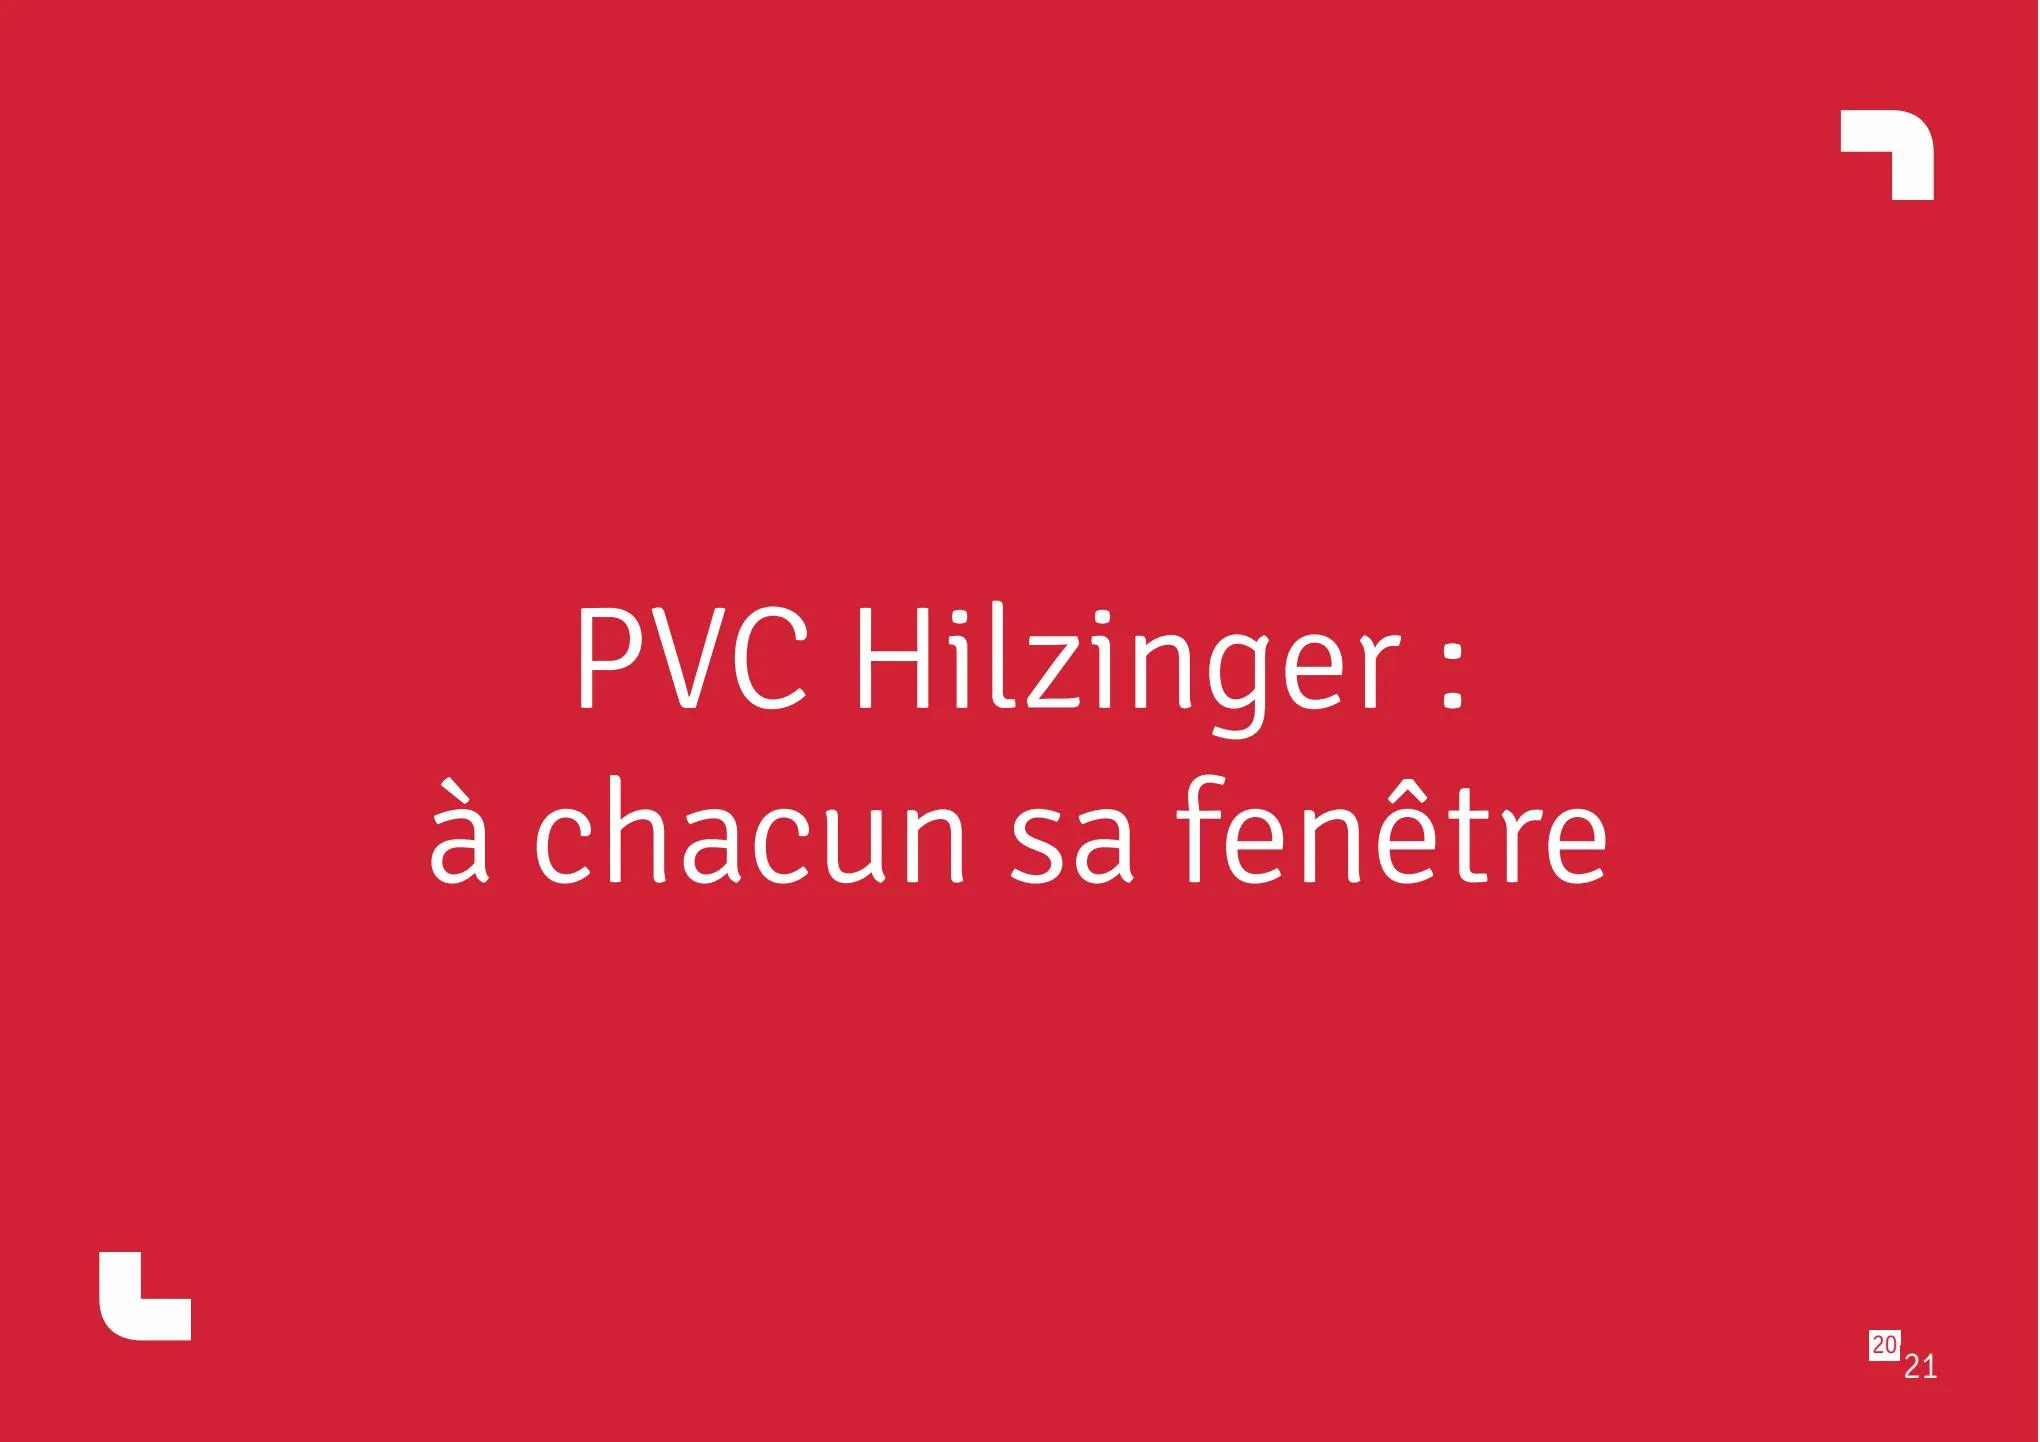 Catalogue Fenetre PVZ Hilzinger, page 00021